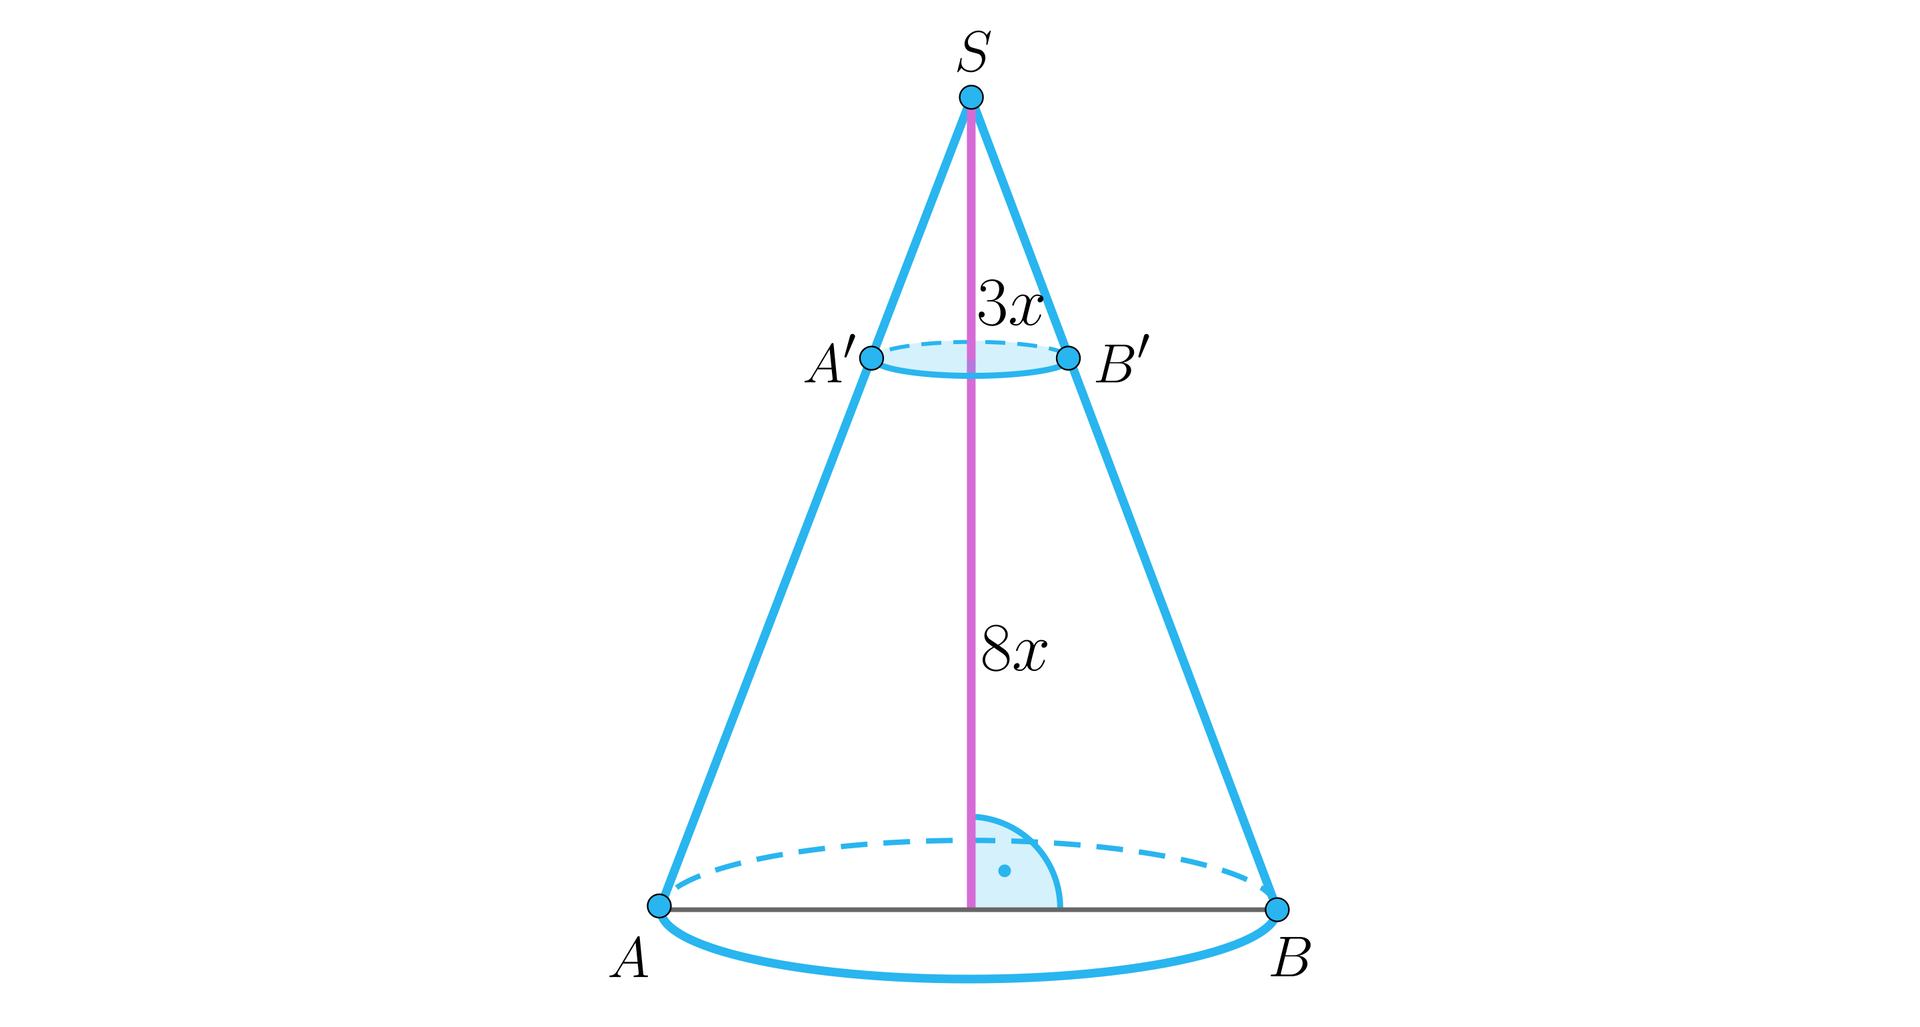 Ilustracja przedstawia stożek ABS. Na lewym ramieniu zaznaczono punkt A', a na prawym B', które następnie połączono i stworzono płaszczyznę równoległą do podstawy. Z wierzchołka S upuszczona została wysokość stożka, którą nasza płaszczyzna podzieliła w stosunku 3 : 8. Wysokość małego stożka oznaczono jako 3x, a dużego, ściętego 8x. 